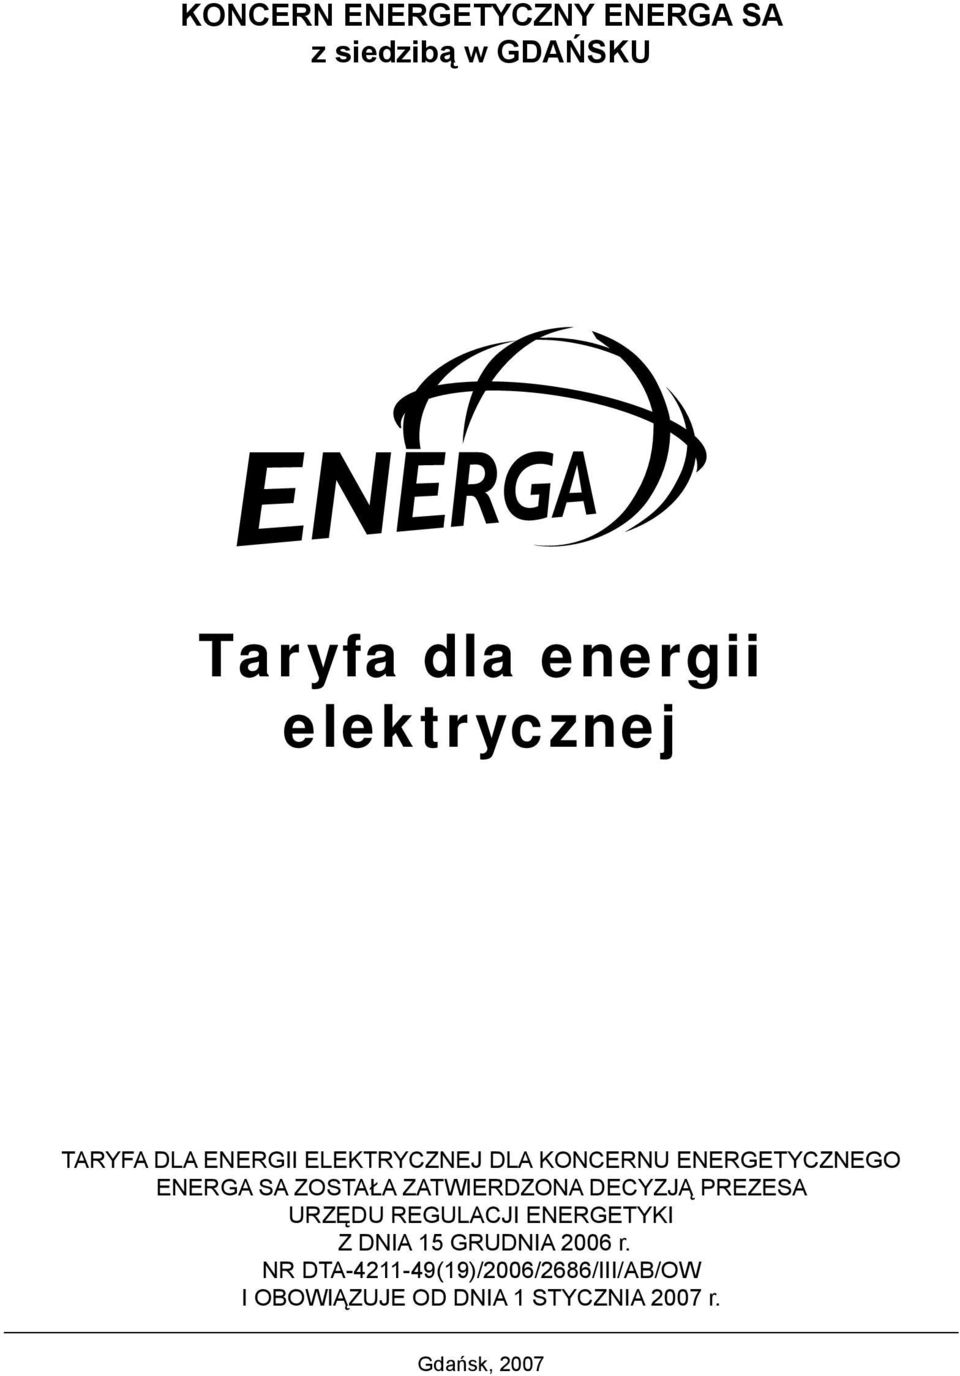 ZATWIERDZONA DECYZJĄ PREZESA URZĘDU REGULACJI ENERGETYKI Z DNIA 15 GRUDNIA 2006 r.